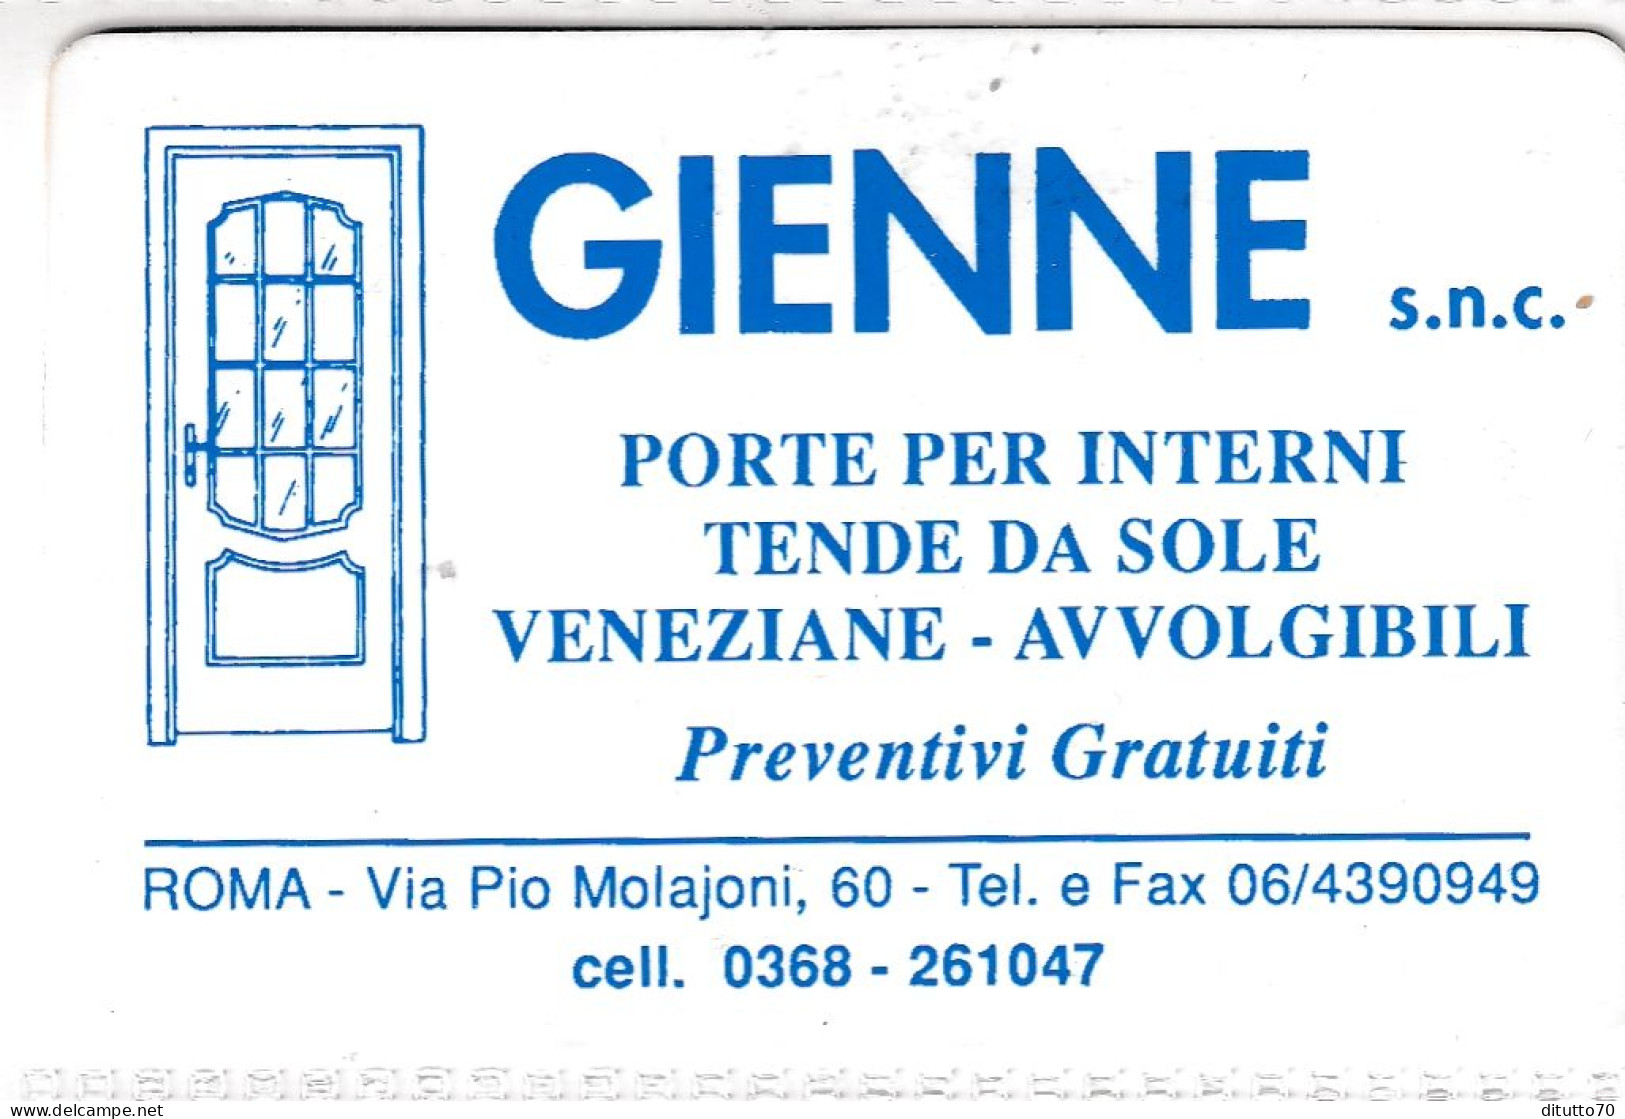 Calendarietto - Gienne - Roma - Anno 1997 - Small : 1991-00